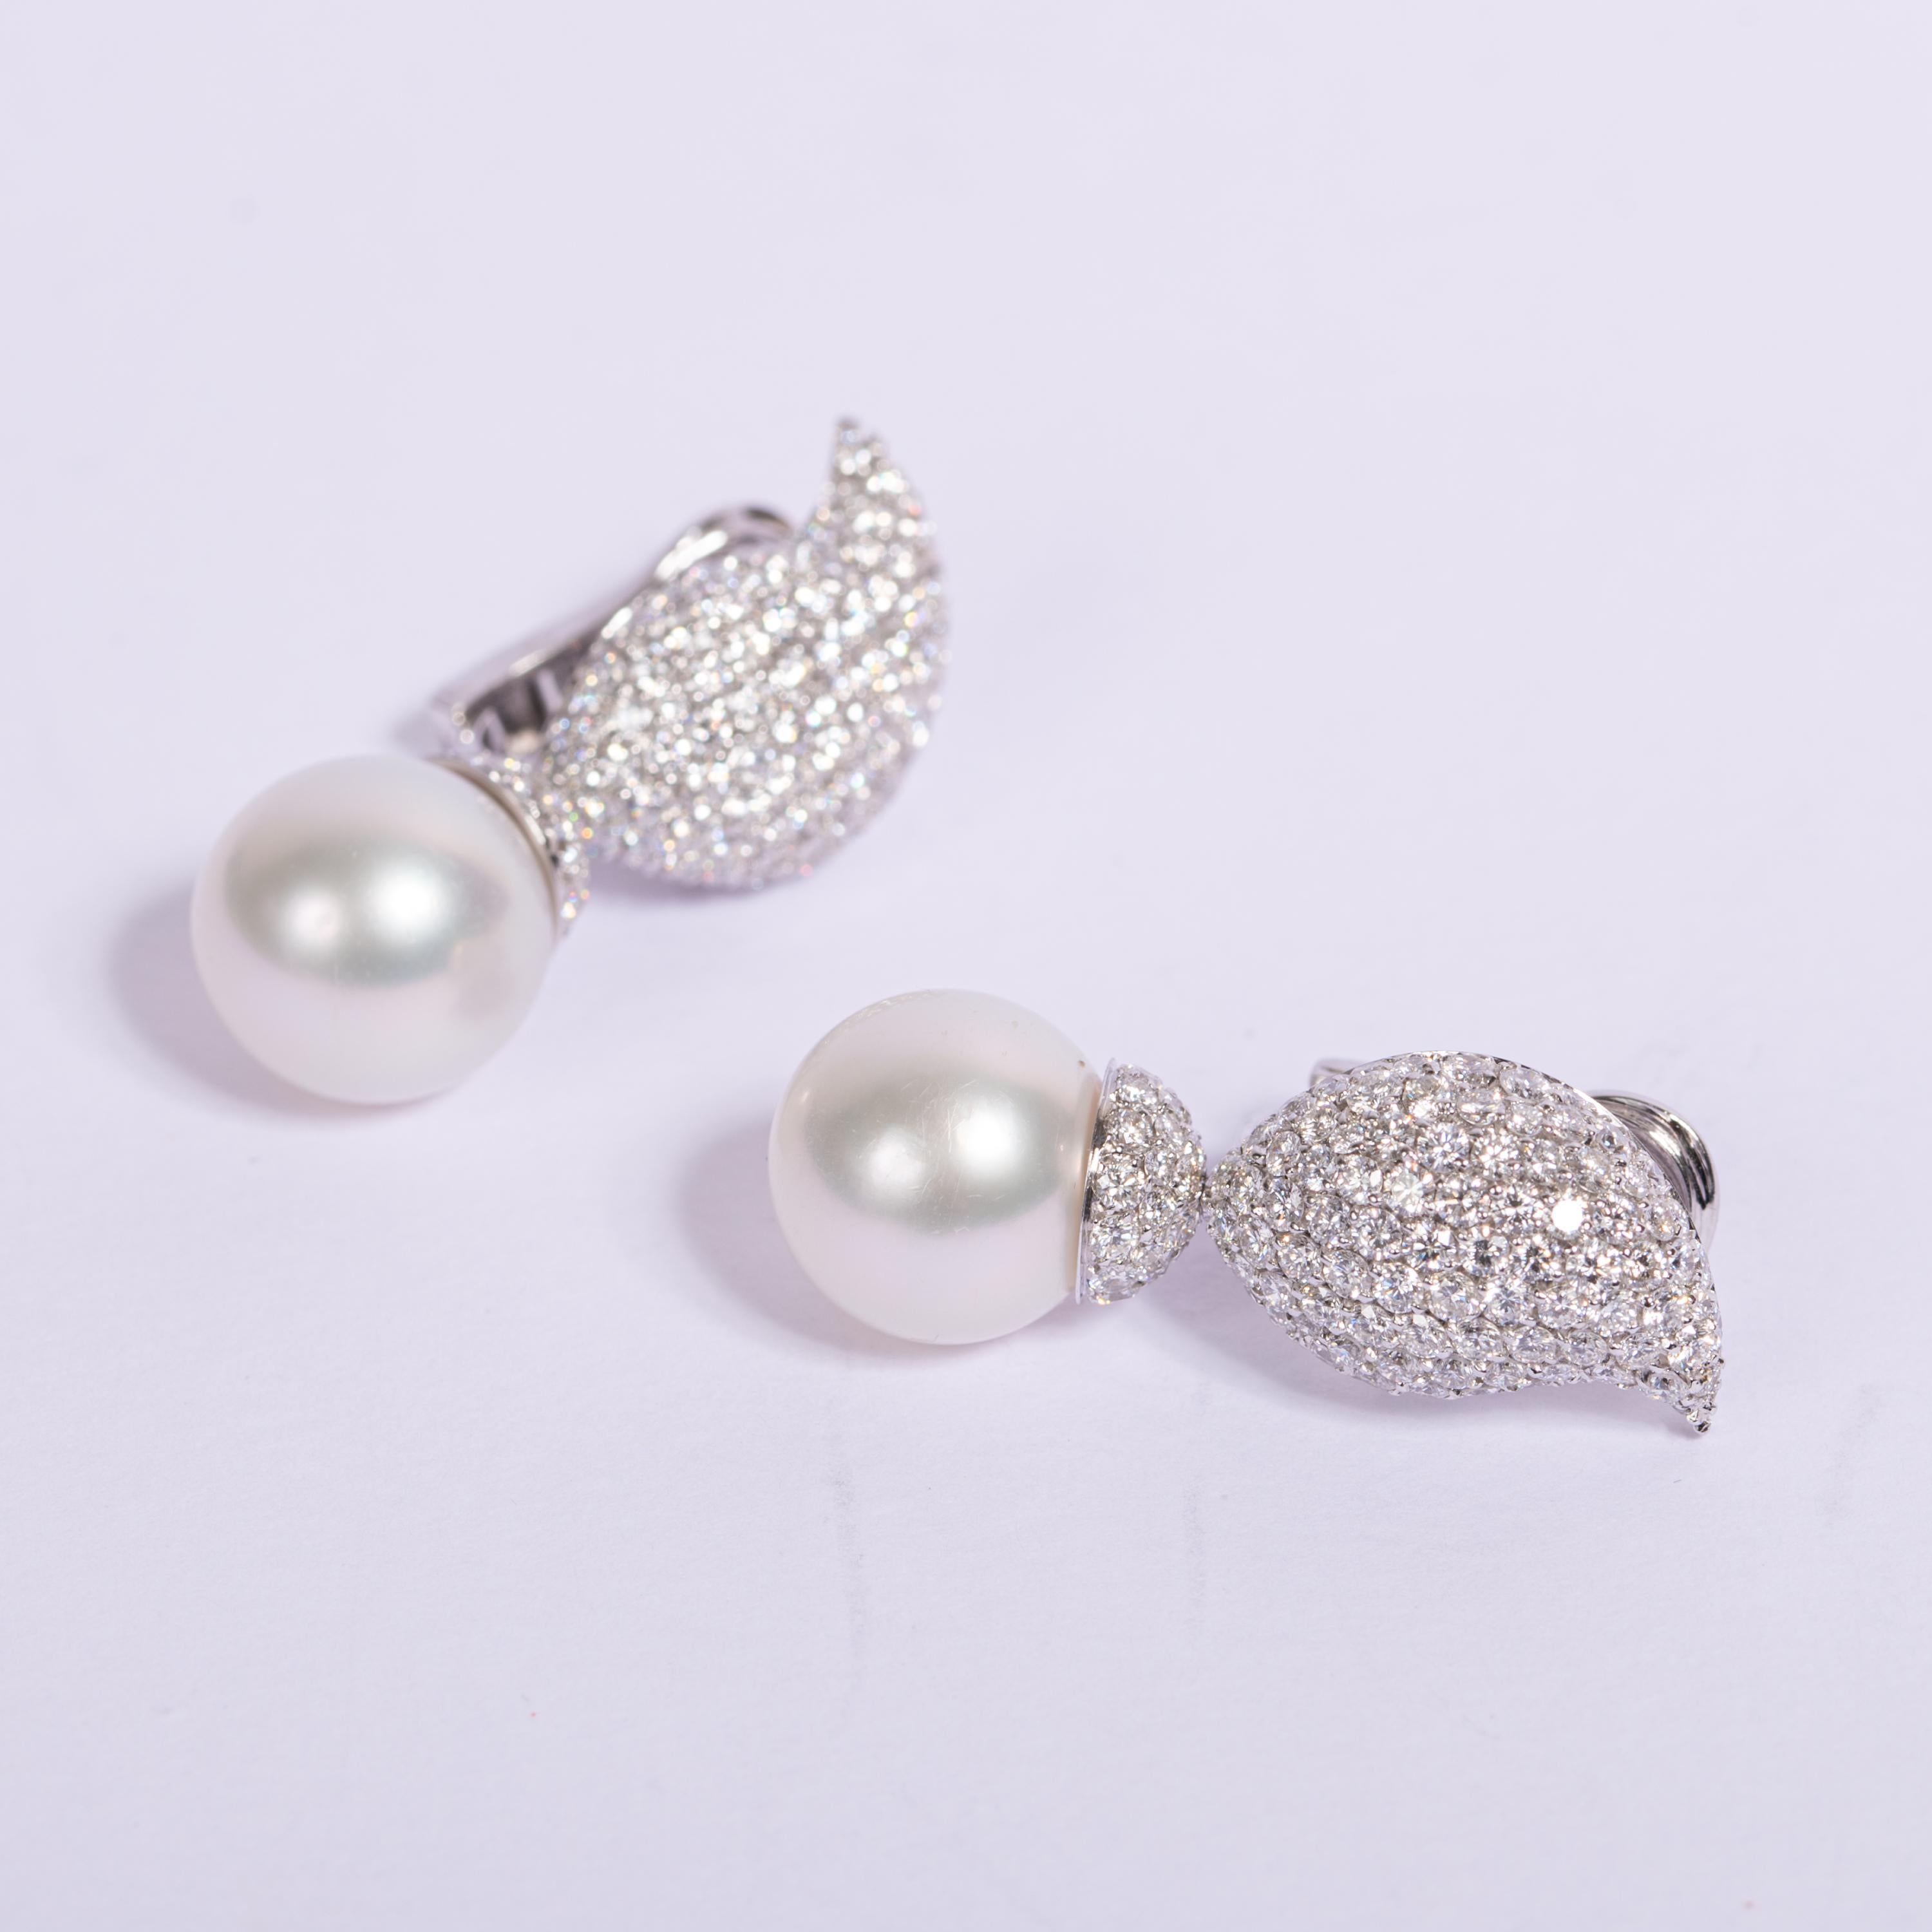 Ein fabelhaftes Crivelli Set aus schicken Perlen- und Diamanttropfen-Ohrringen mit 5,14 Karat weißen Diamanten im Brillantschliff, Farbe F/G, über die gesamte Oberfläche des Tropfens für maximales Funkeln! Der Durchmesser der Perle beträgt 12 Karat